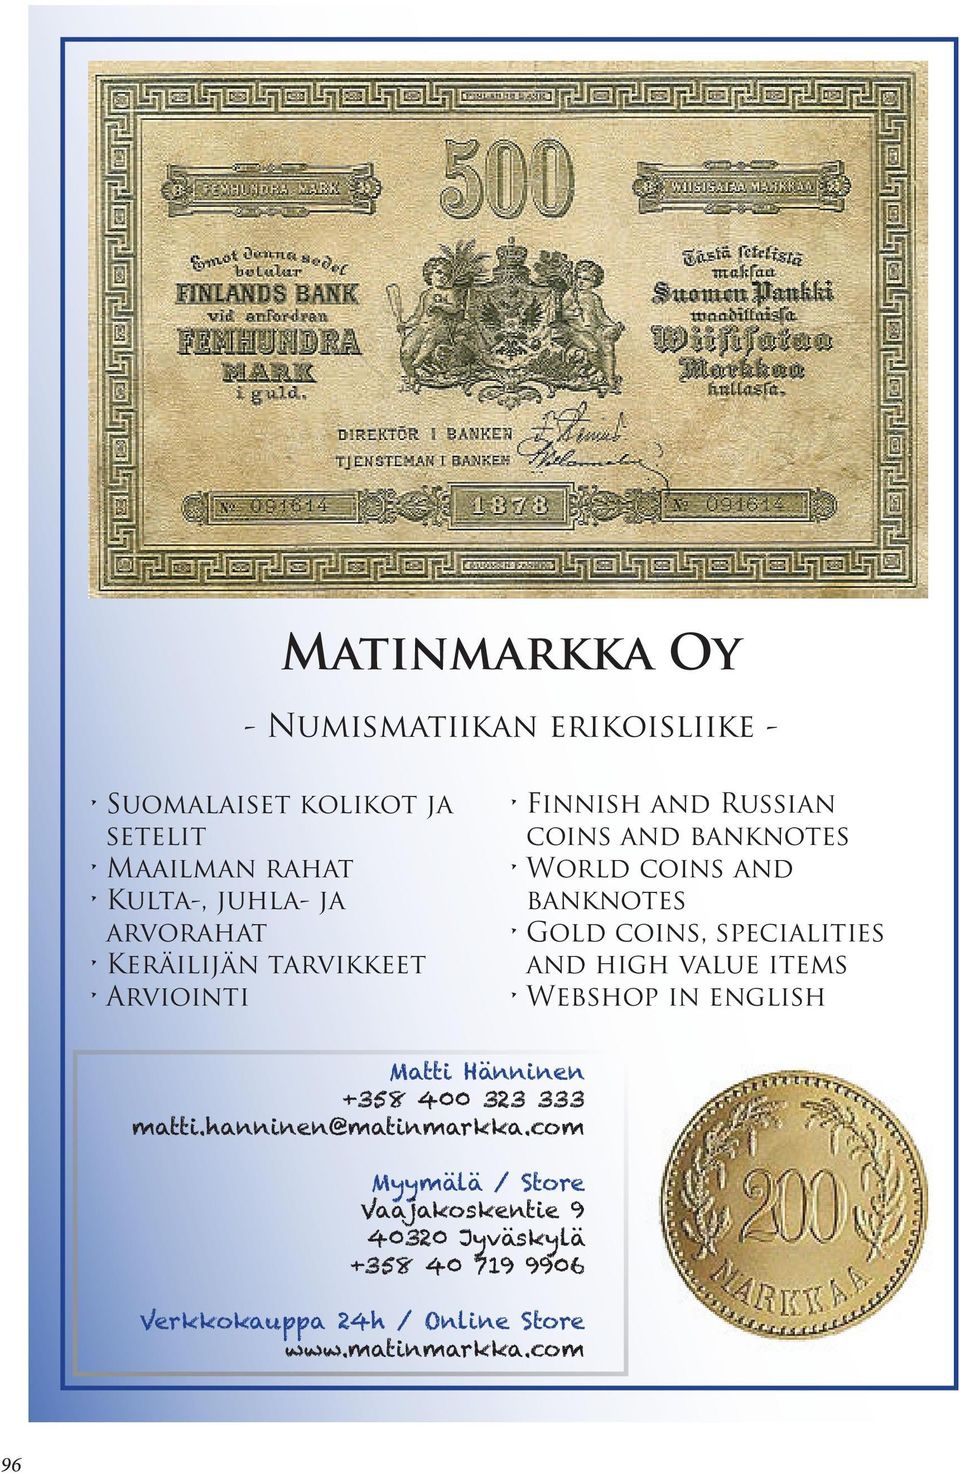 coins, specialities and high value items Webshop inenglish Matti Hänninen +358 400 323 333 matti.